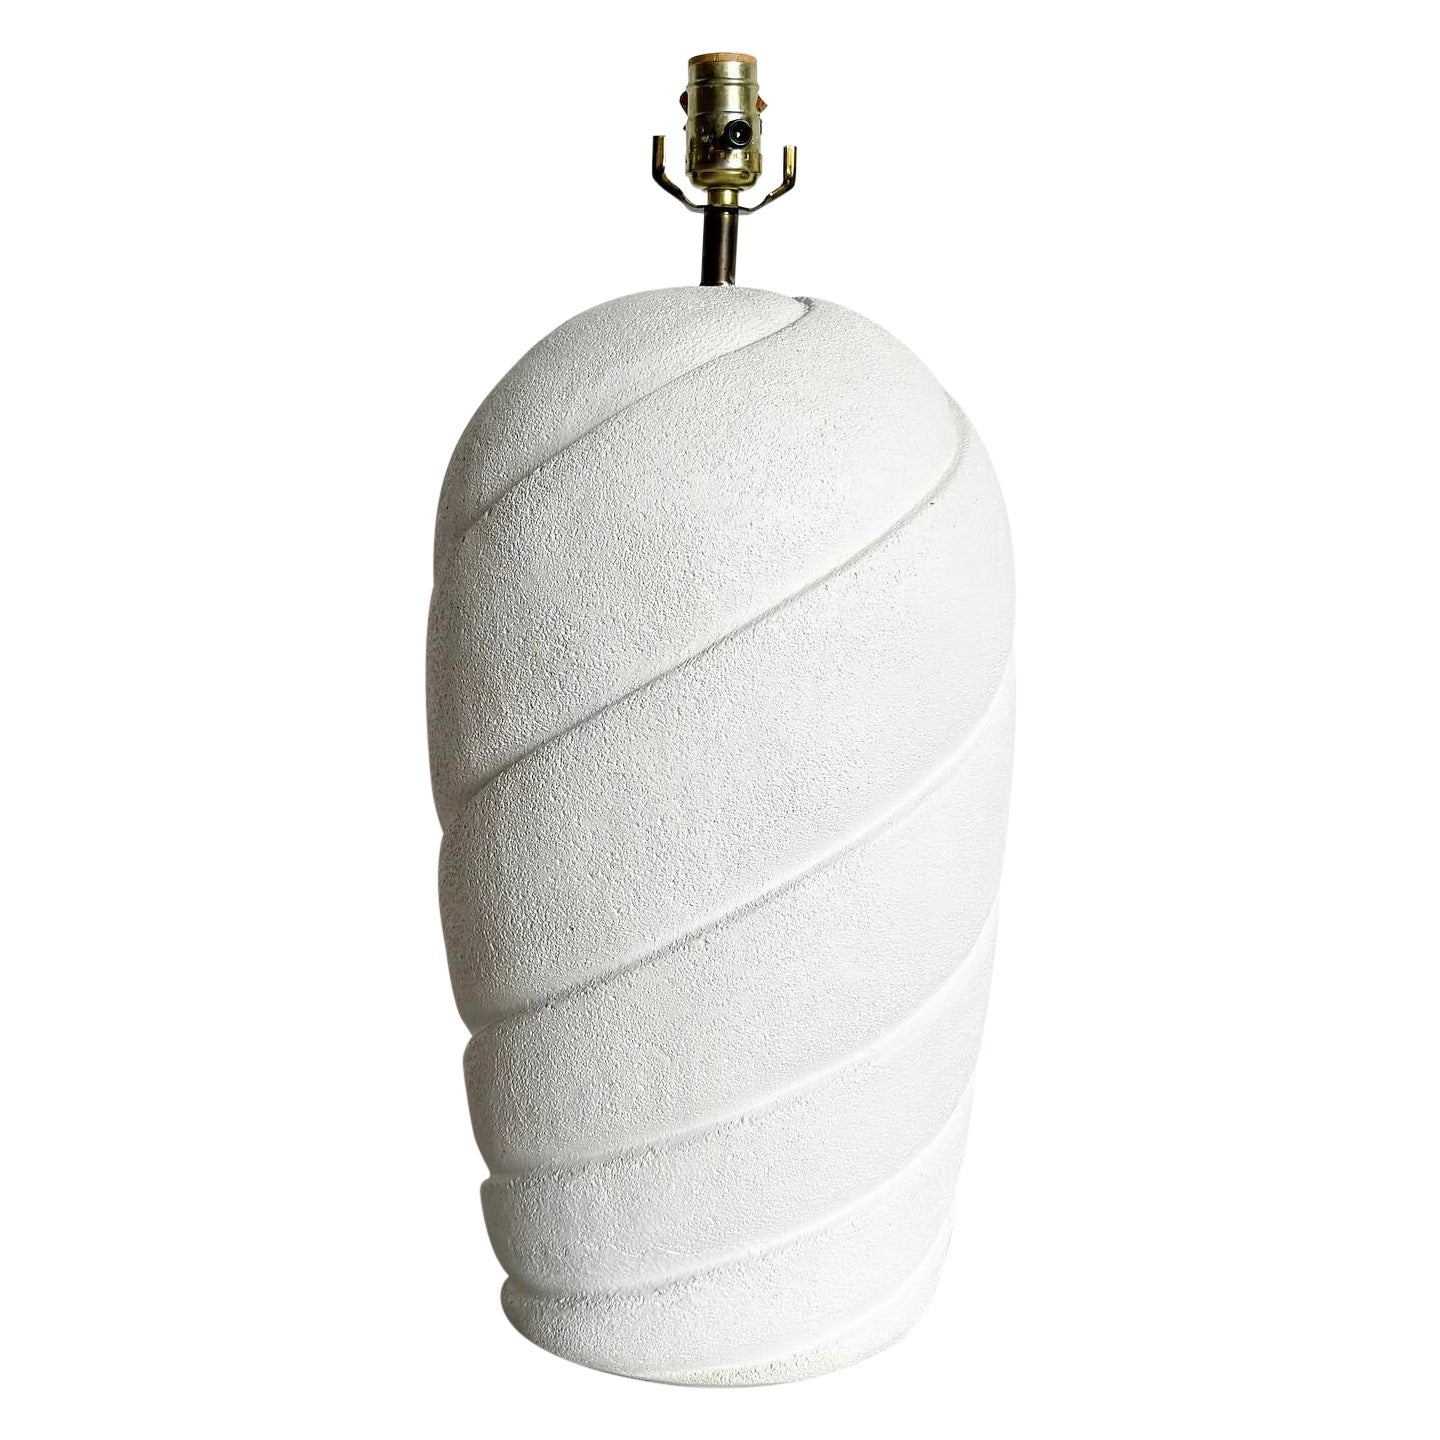 Lampe de table postmoderne en céramique Off-White sculptée en forme de tourbillon